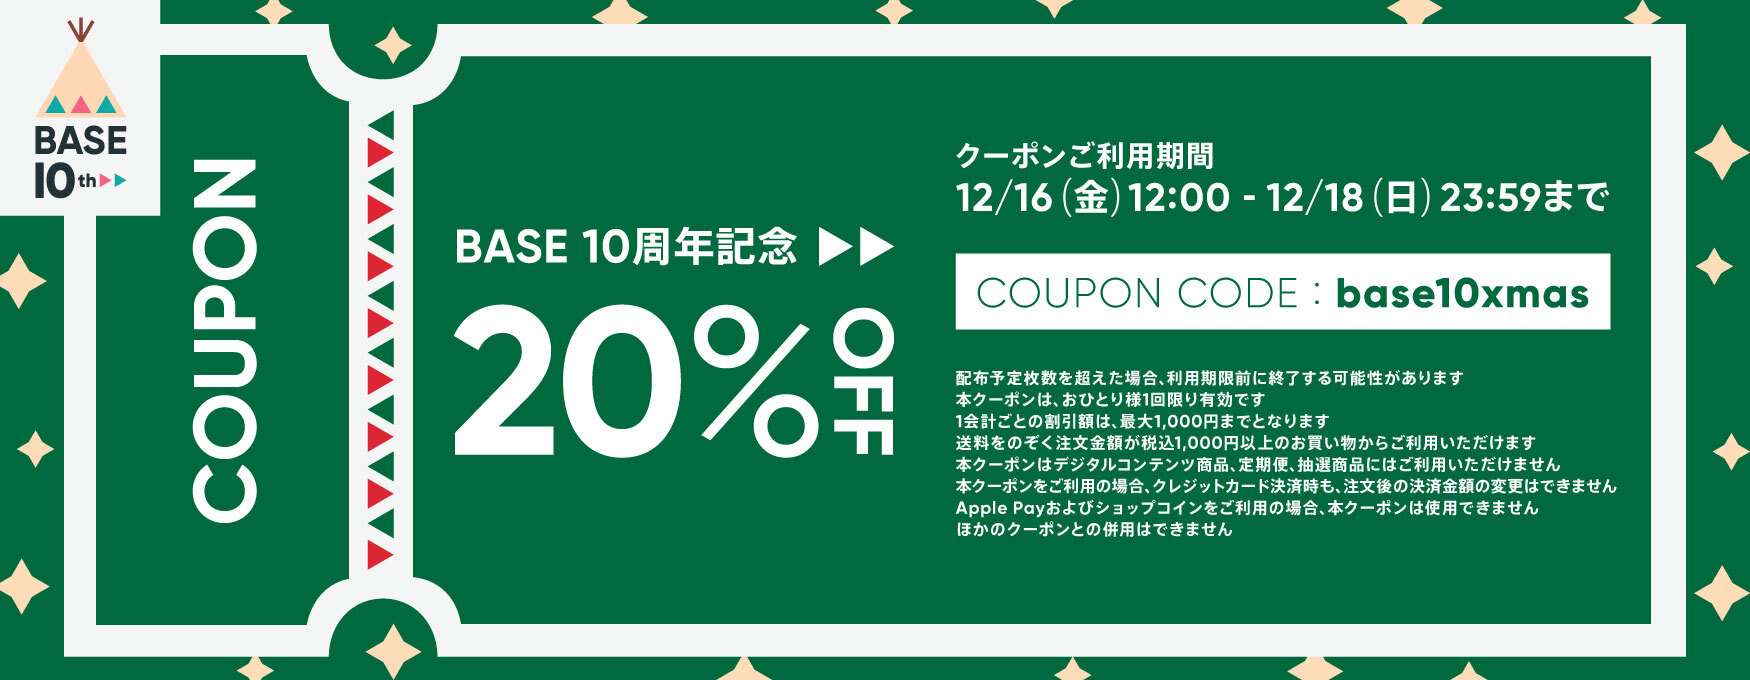 【終了しました】12/16-18限定20%OFF(最大1000円OFF)クーポンキャンペーン実施中